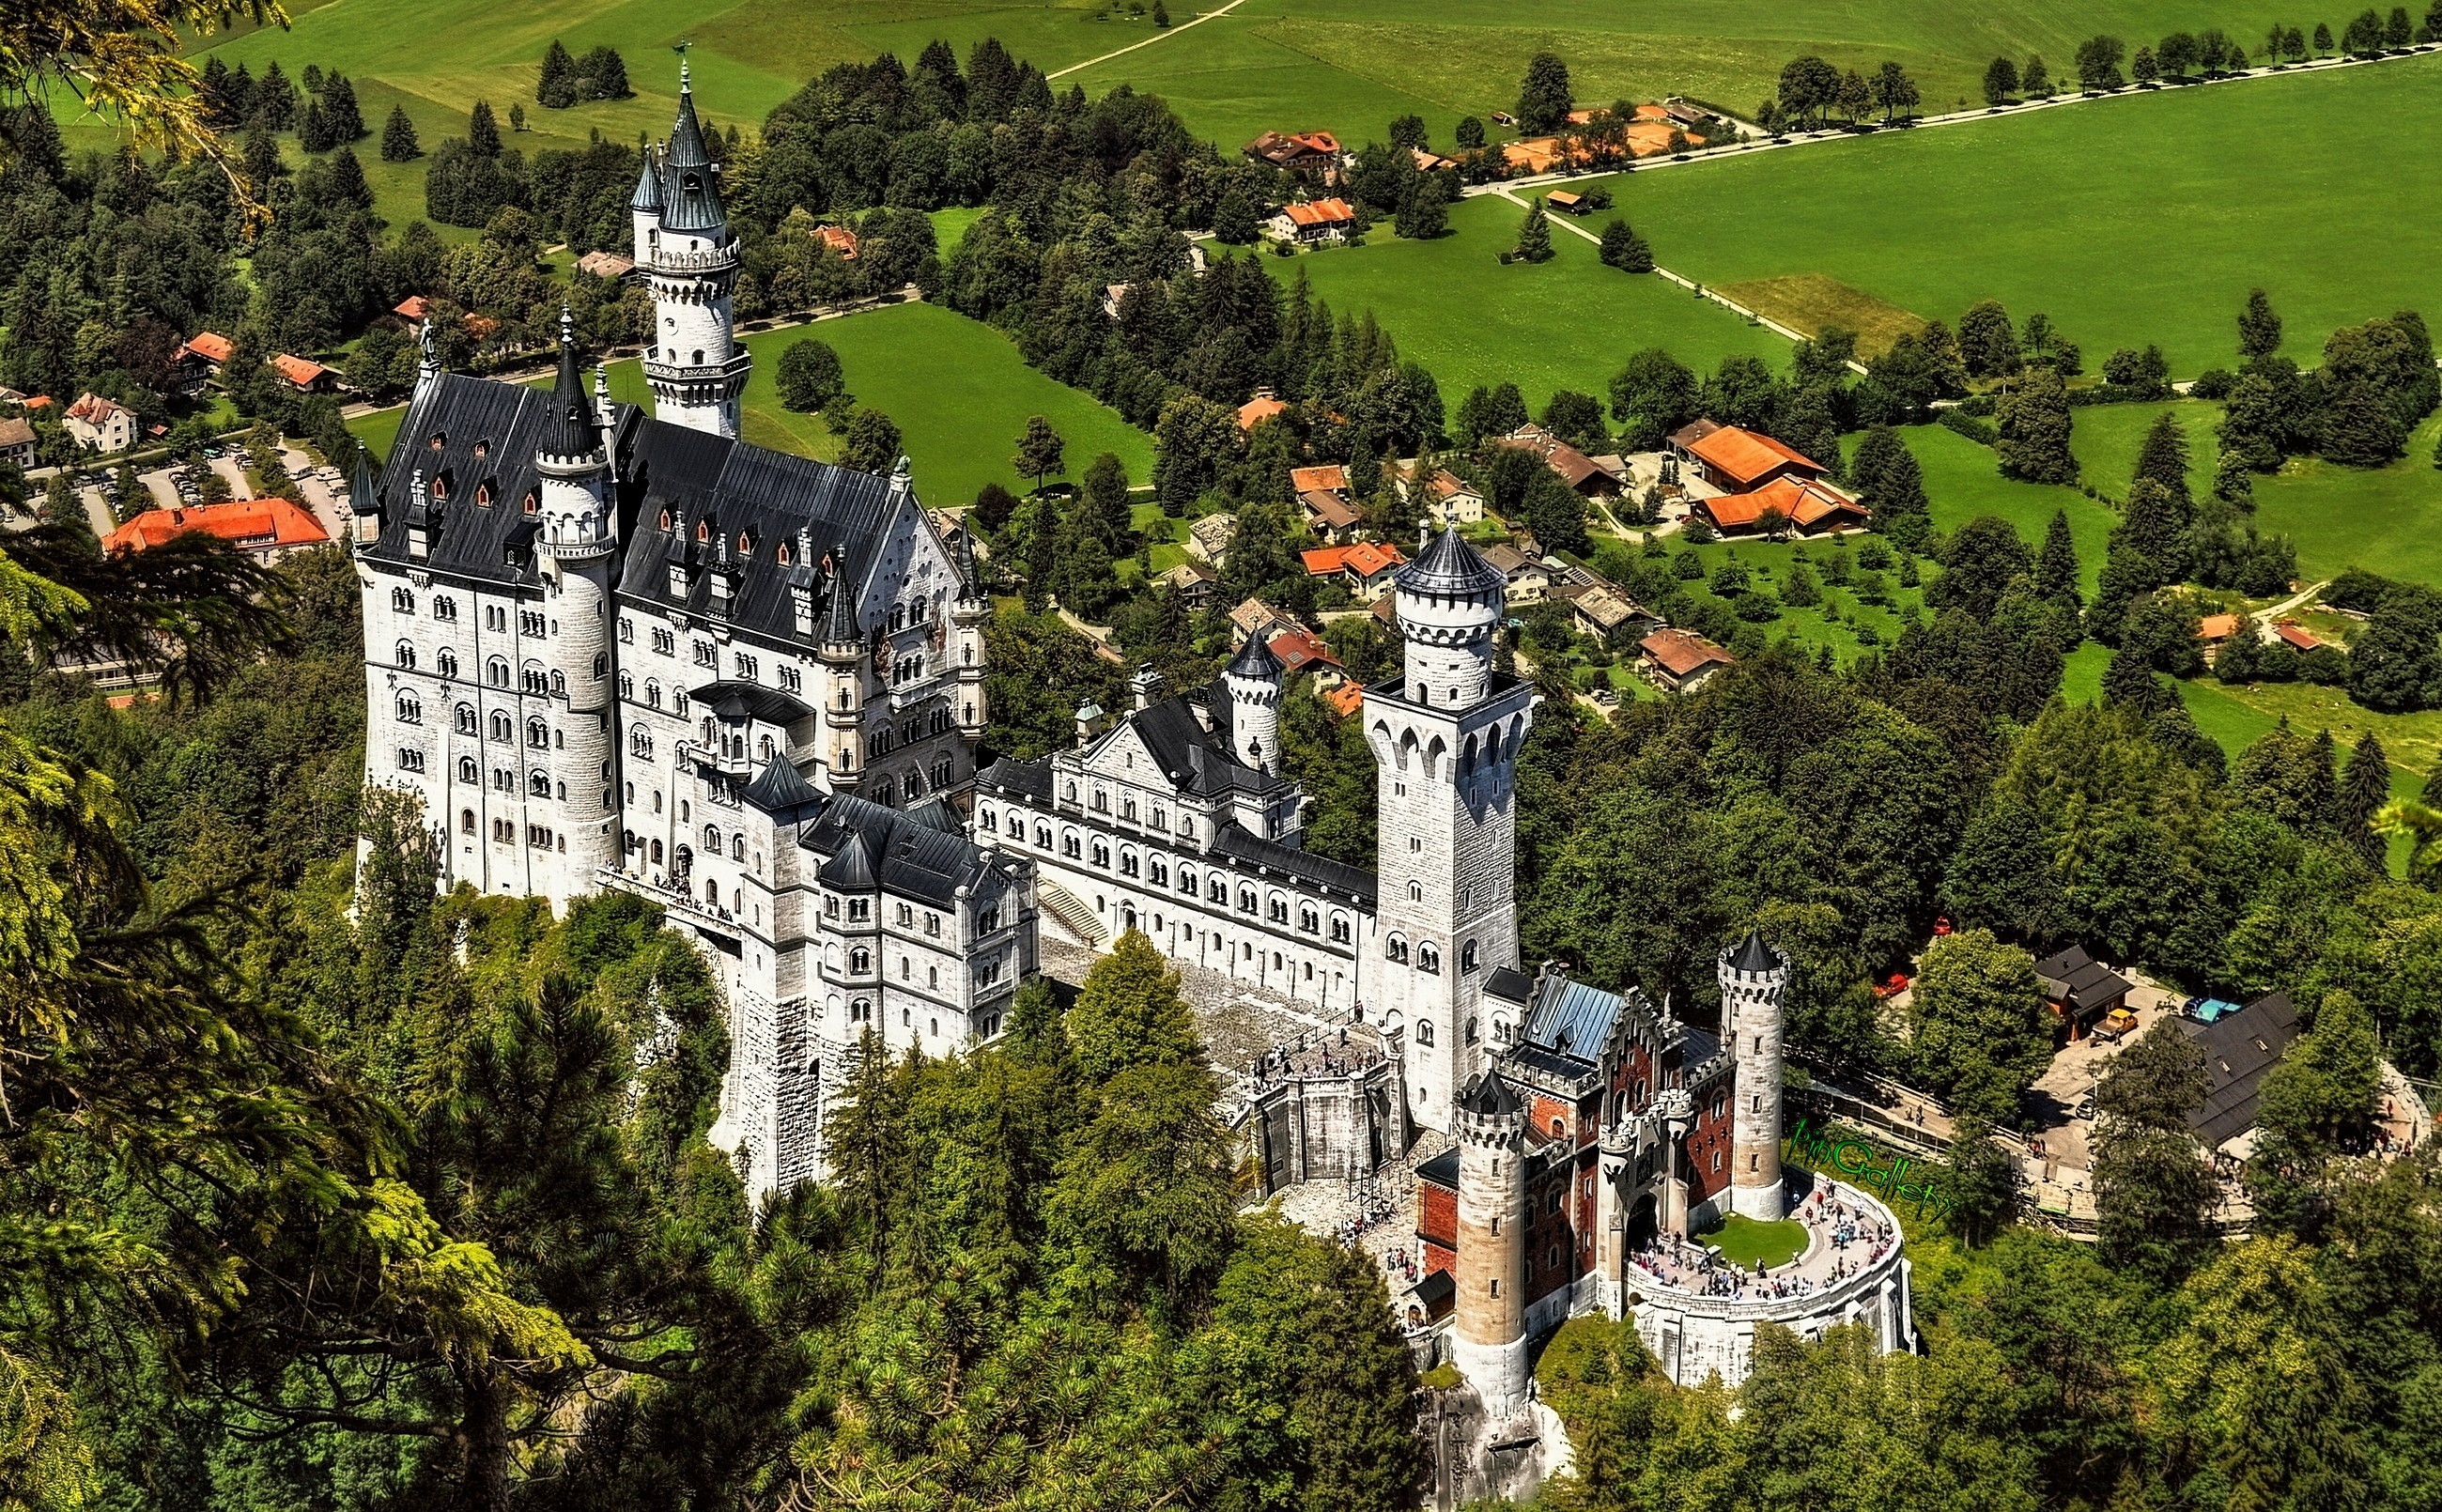 Нойшванштайн – самый сказочный замок из средневековья в германии и мире